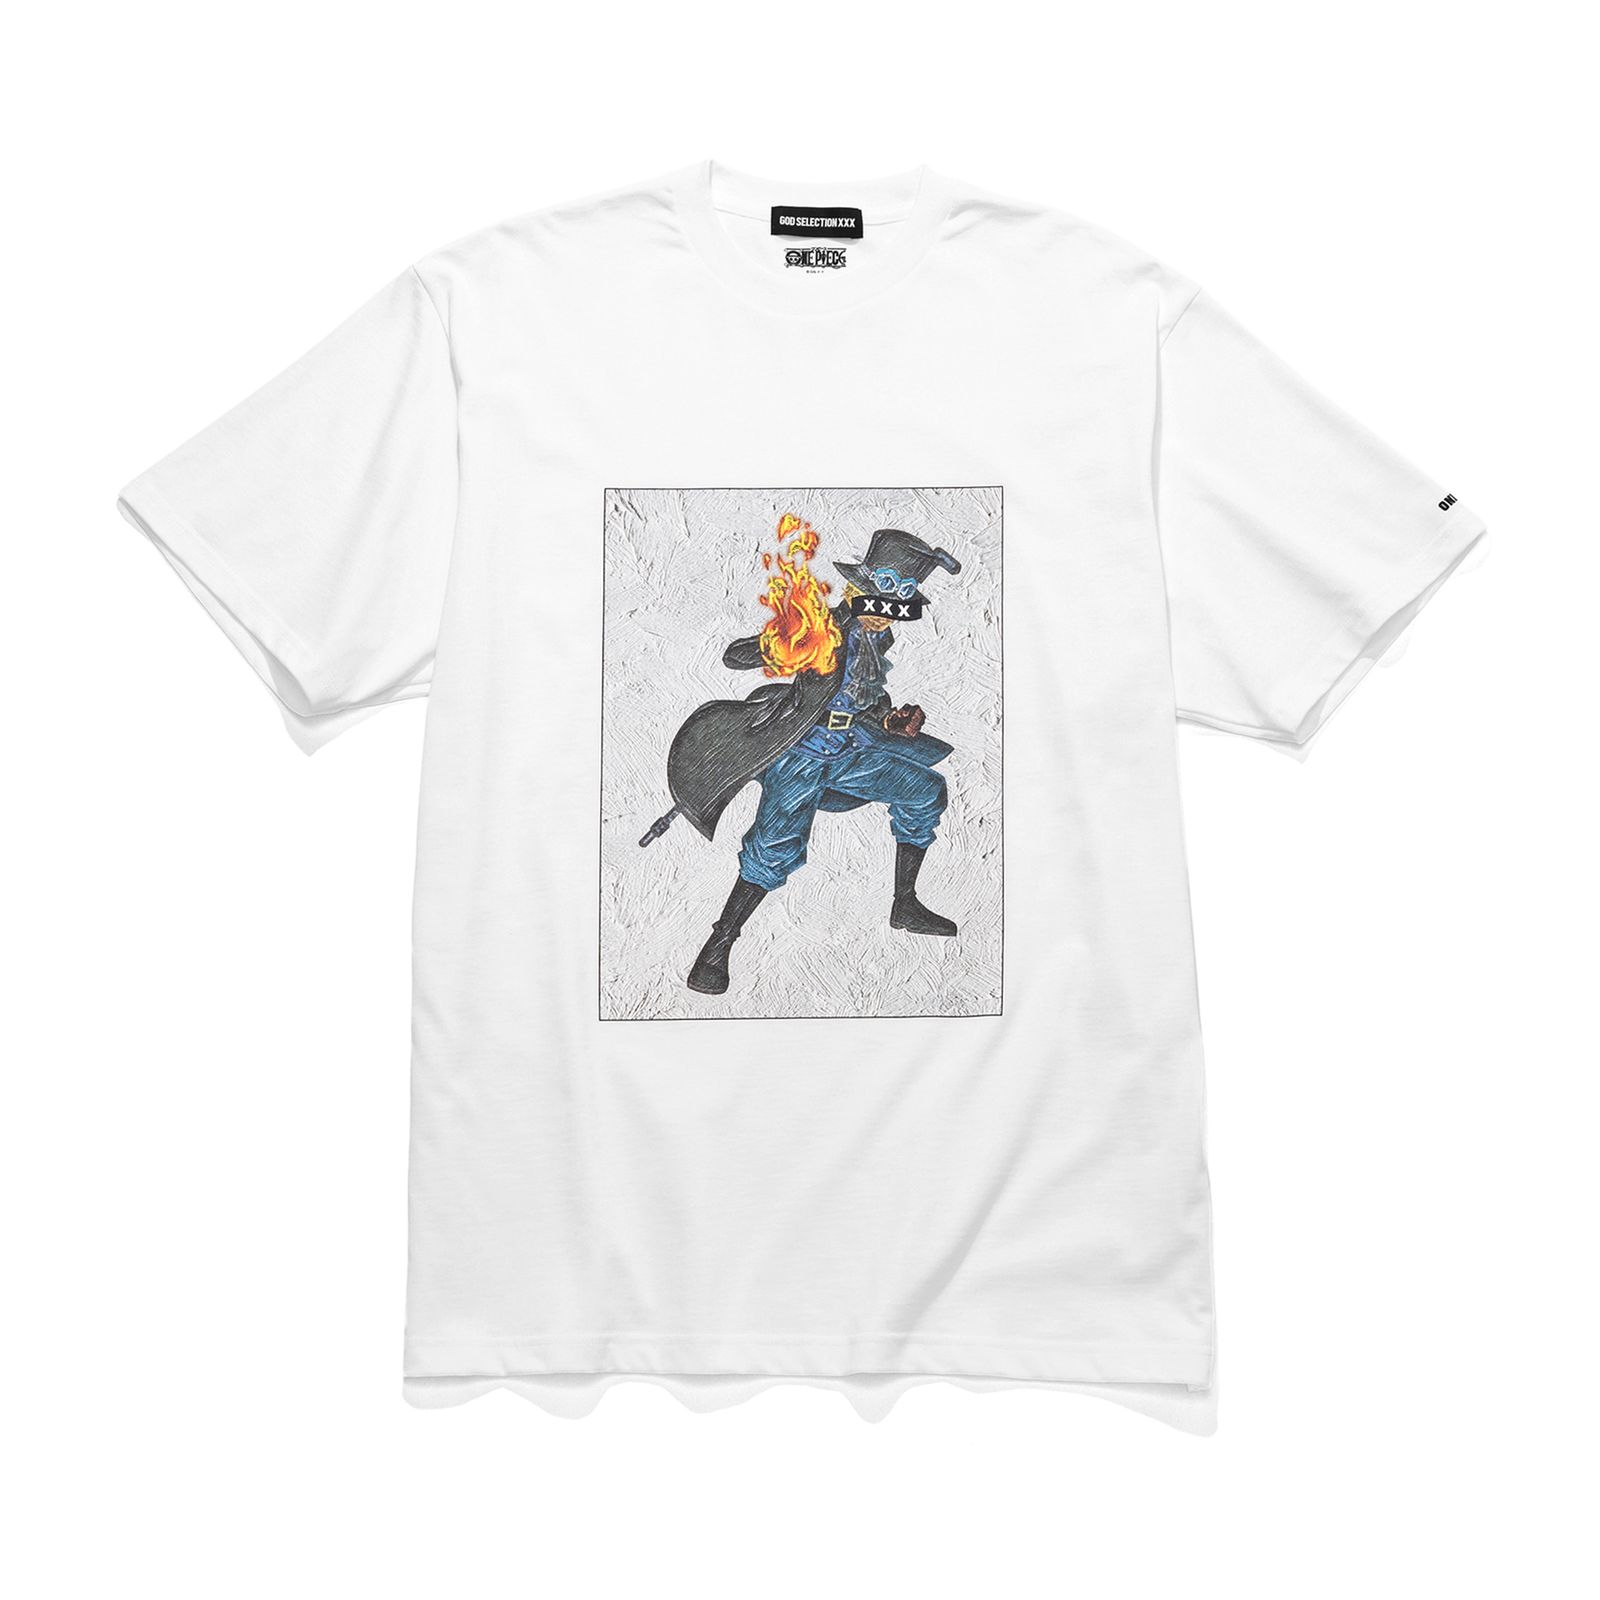 国内在庫有り GOD SELECTION XXX ワンピースコラボ Tシャツ/カットソー(半袖/袖なし)